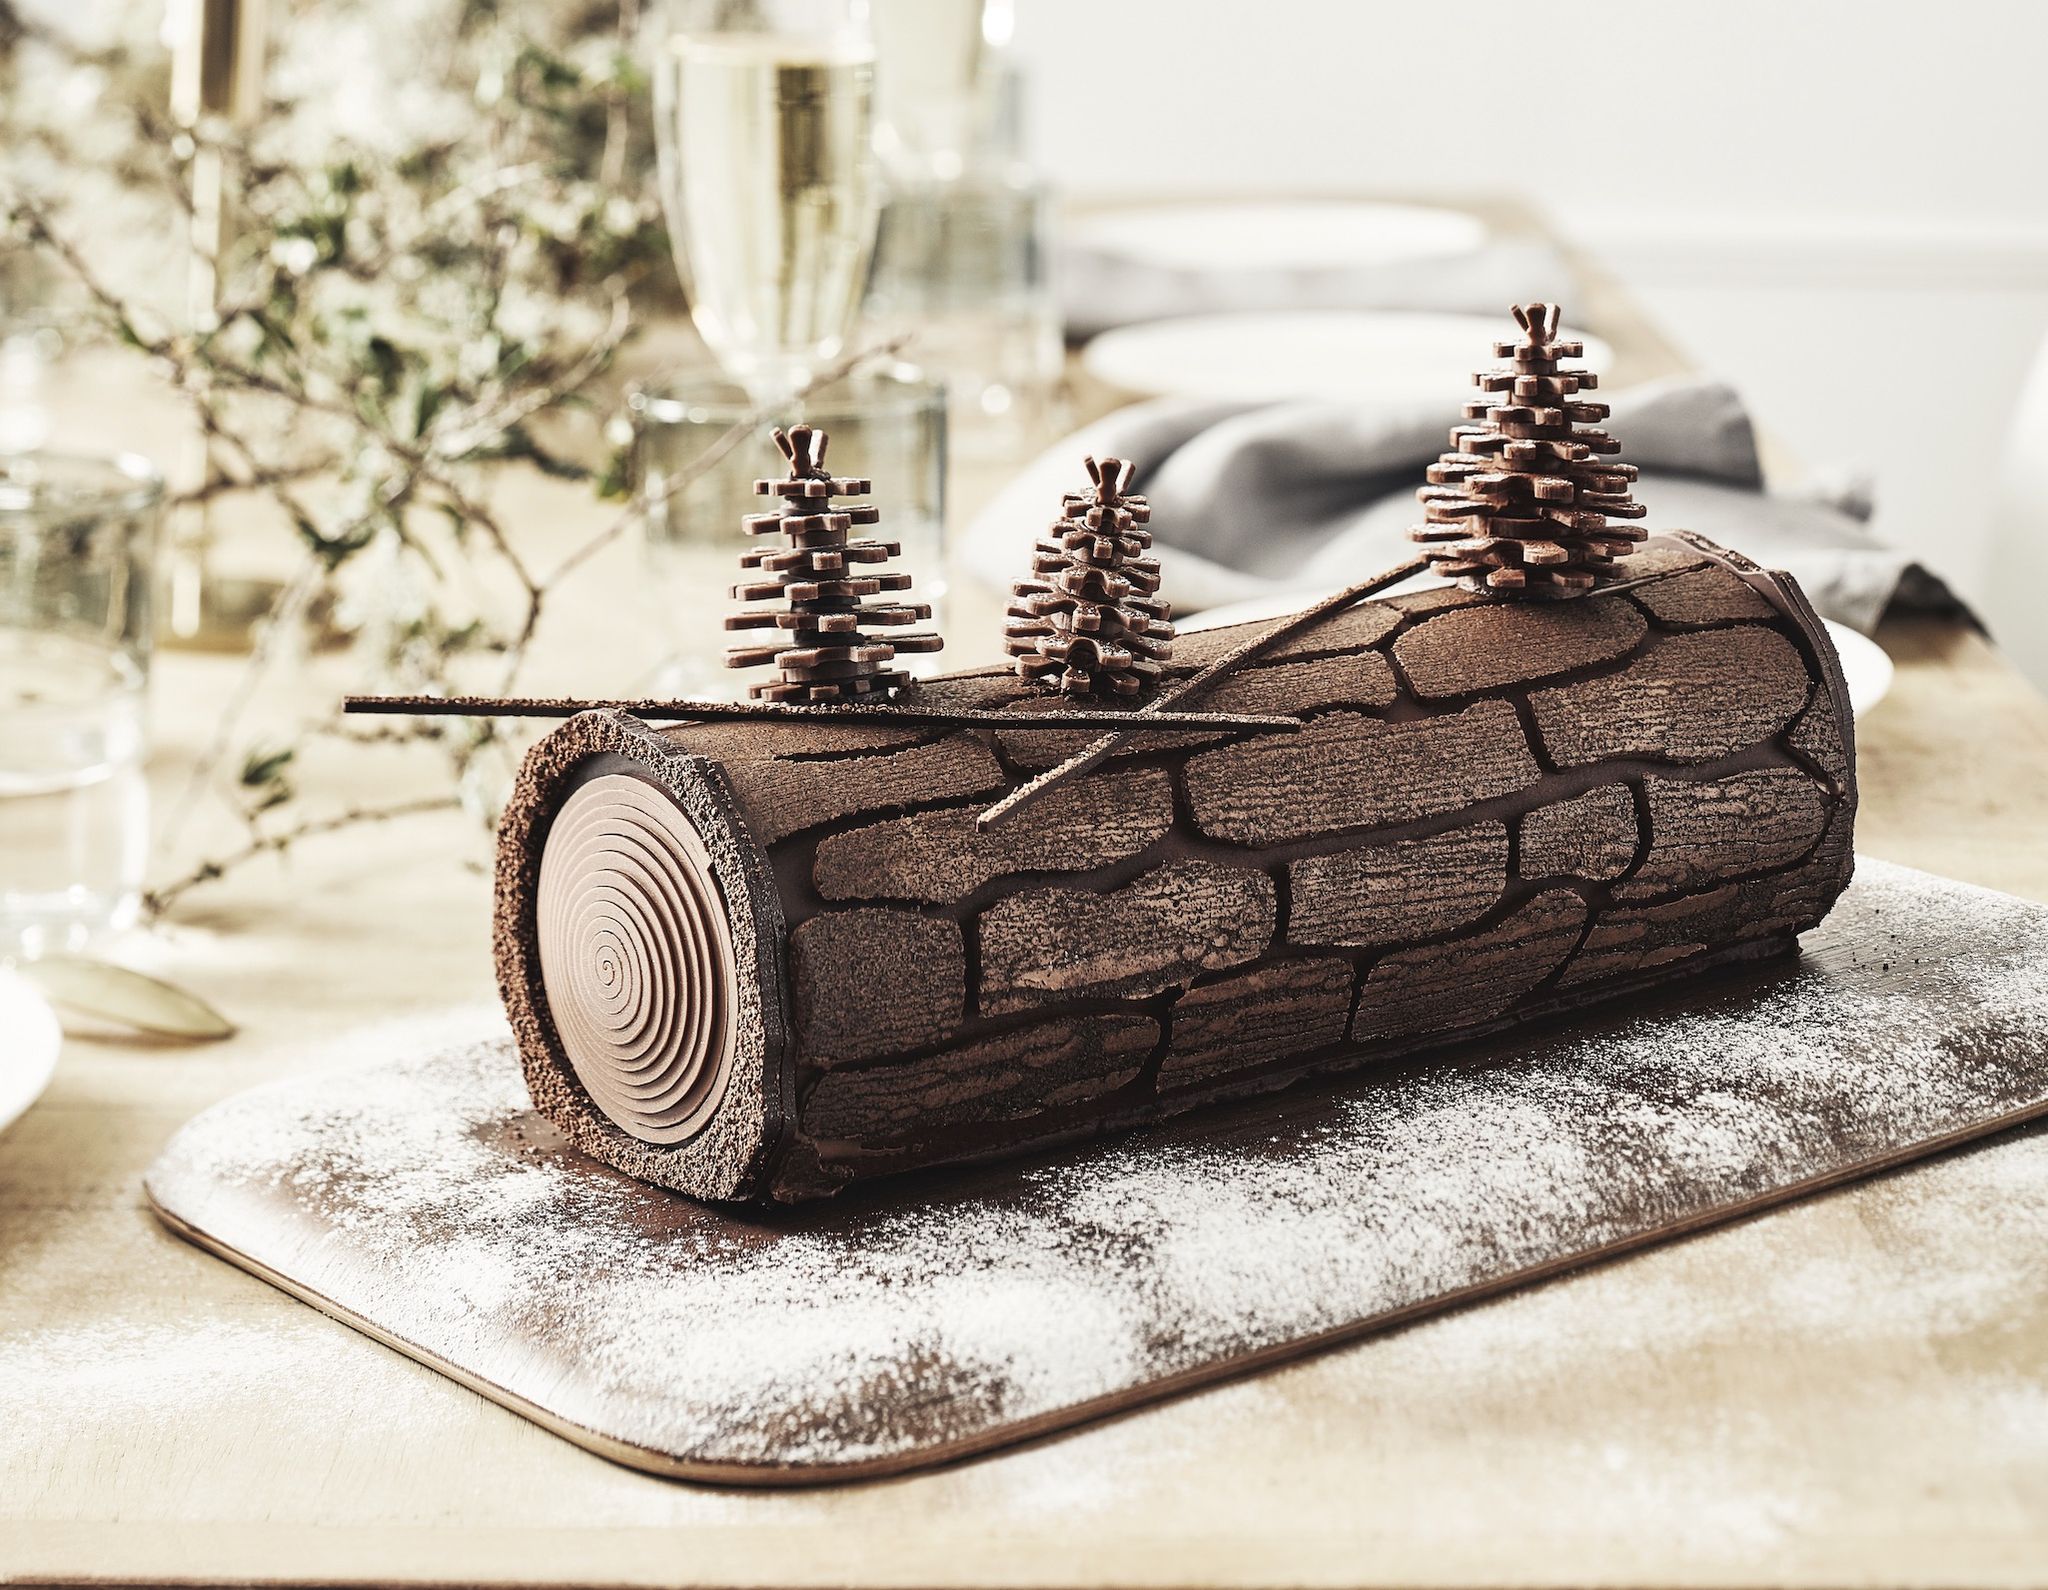 Bûche de Noël chocolat/praliné - Notre recette avec photos - Meilleur du  Chef